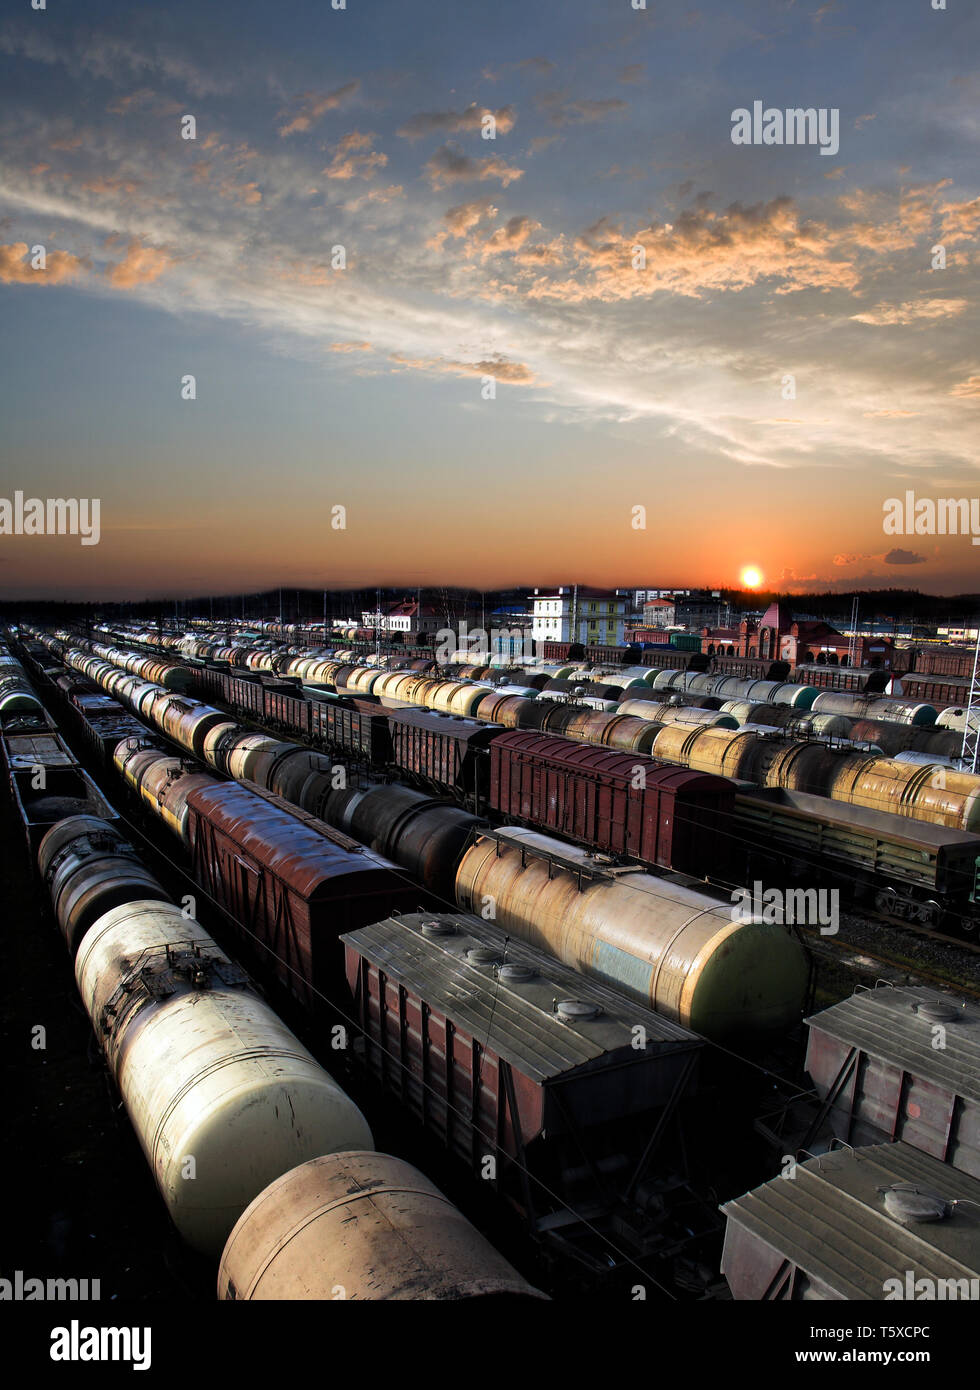 Automobili della ferrovia su una stazione ferroviaria. Trasporto merci. Lavoro di industria. Scena urbana. Bel tramonto. Foto Stock